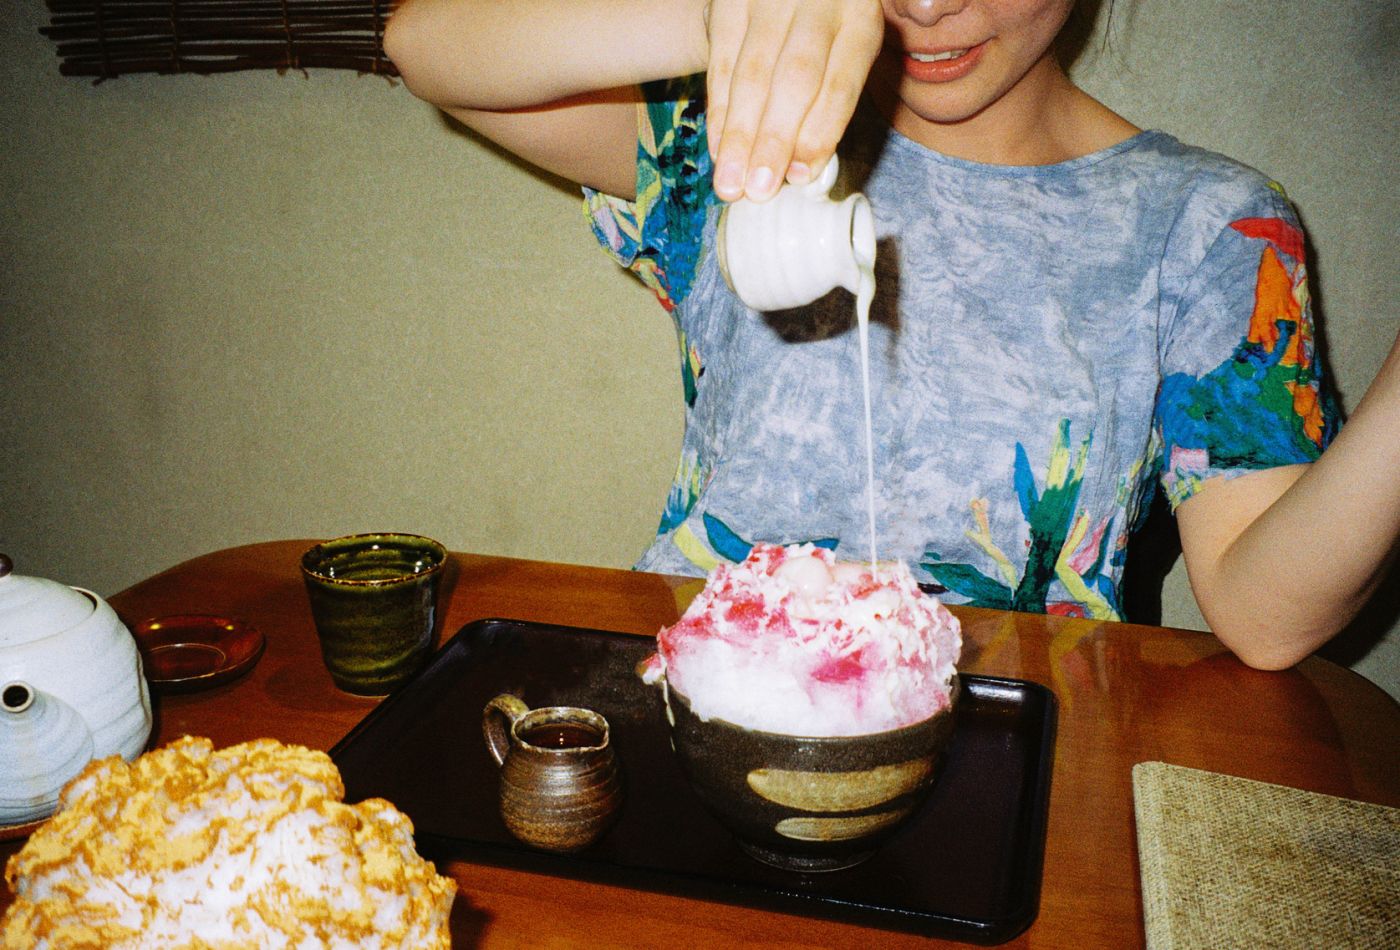 A Woman Making A Cake